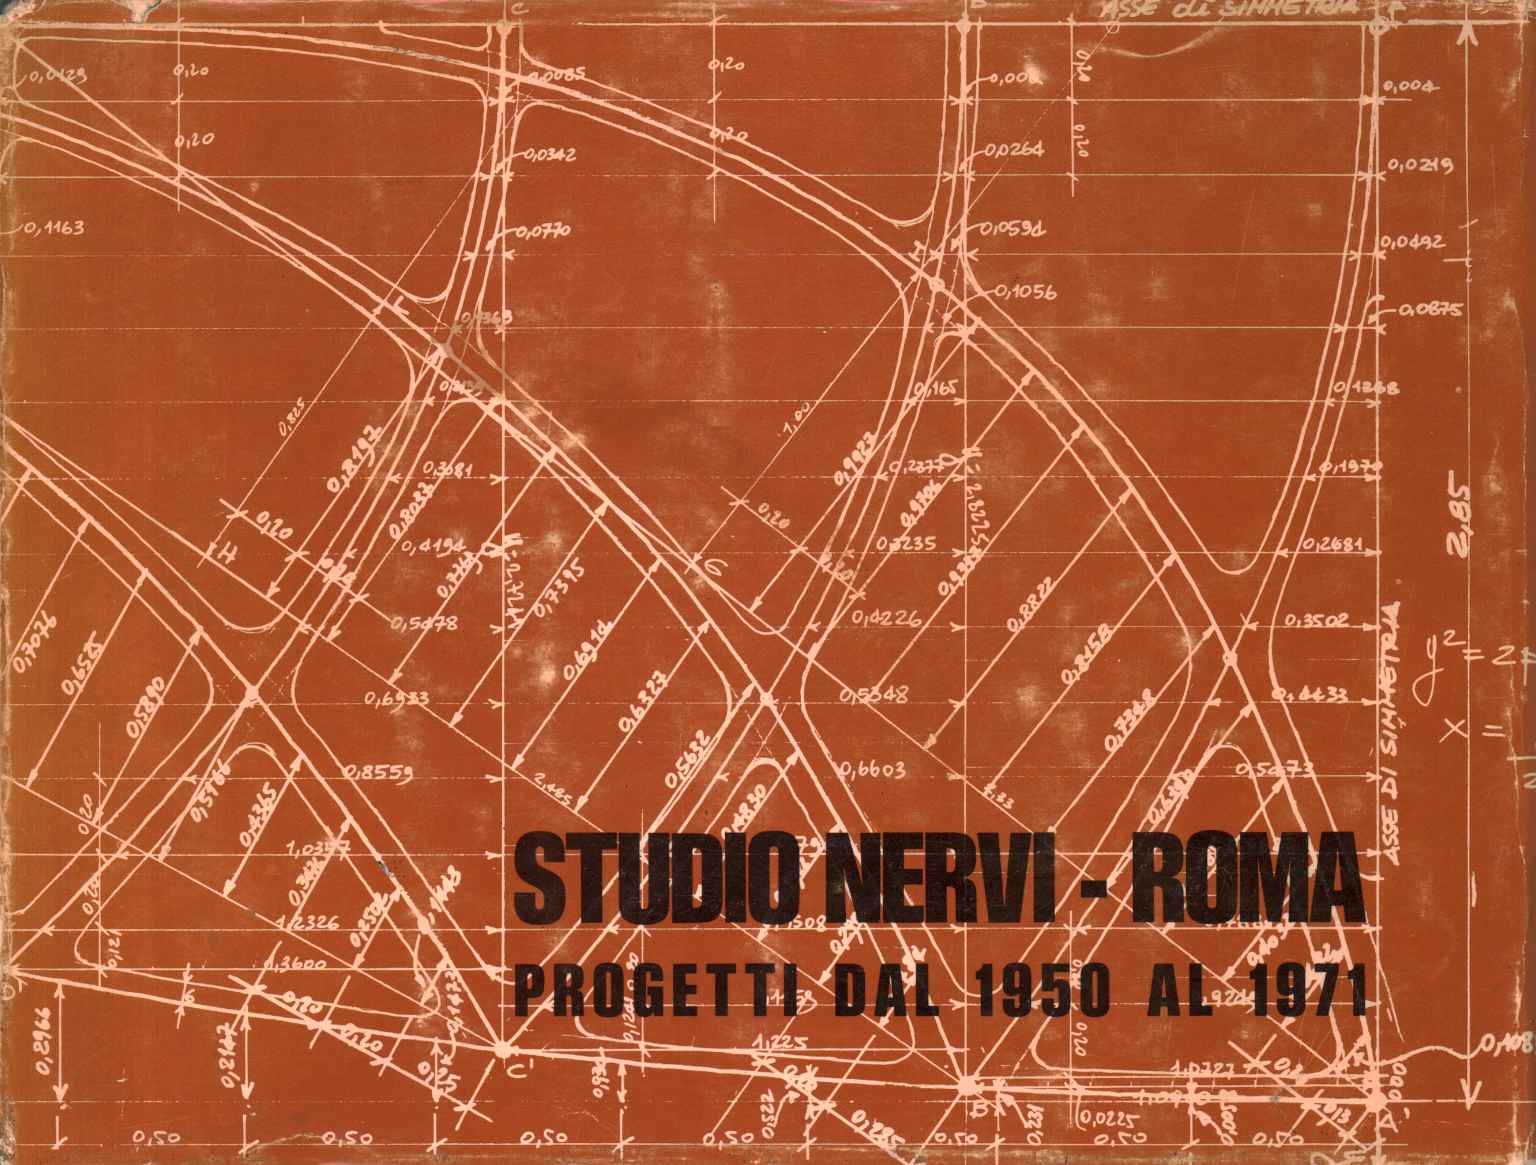 Studio Nervi - Rome